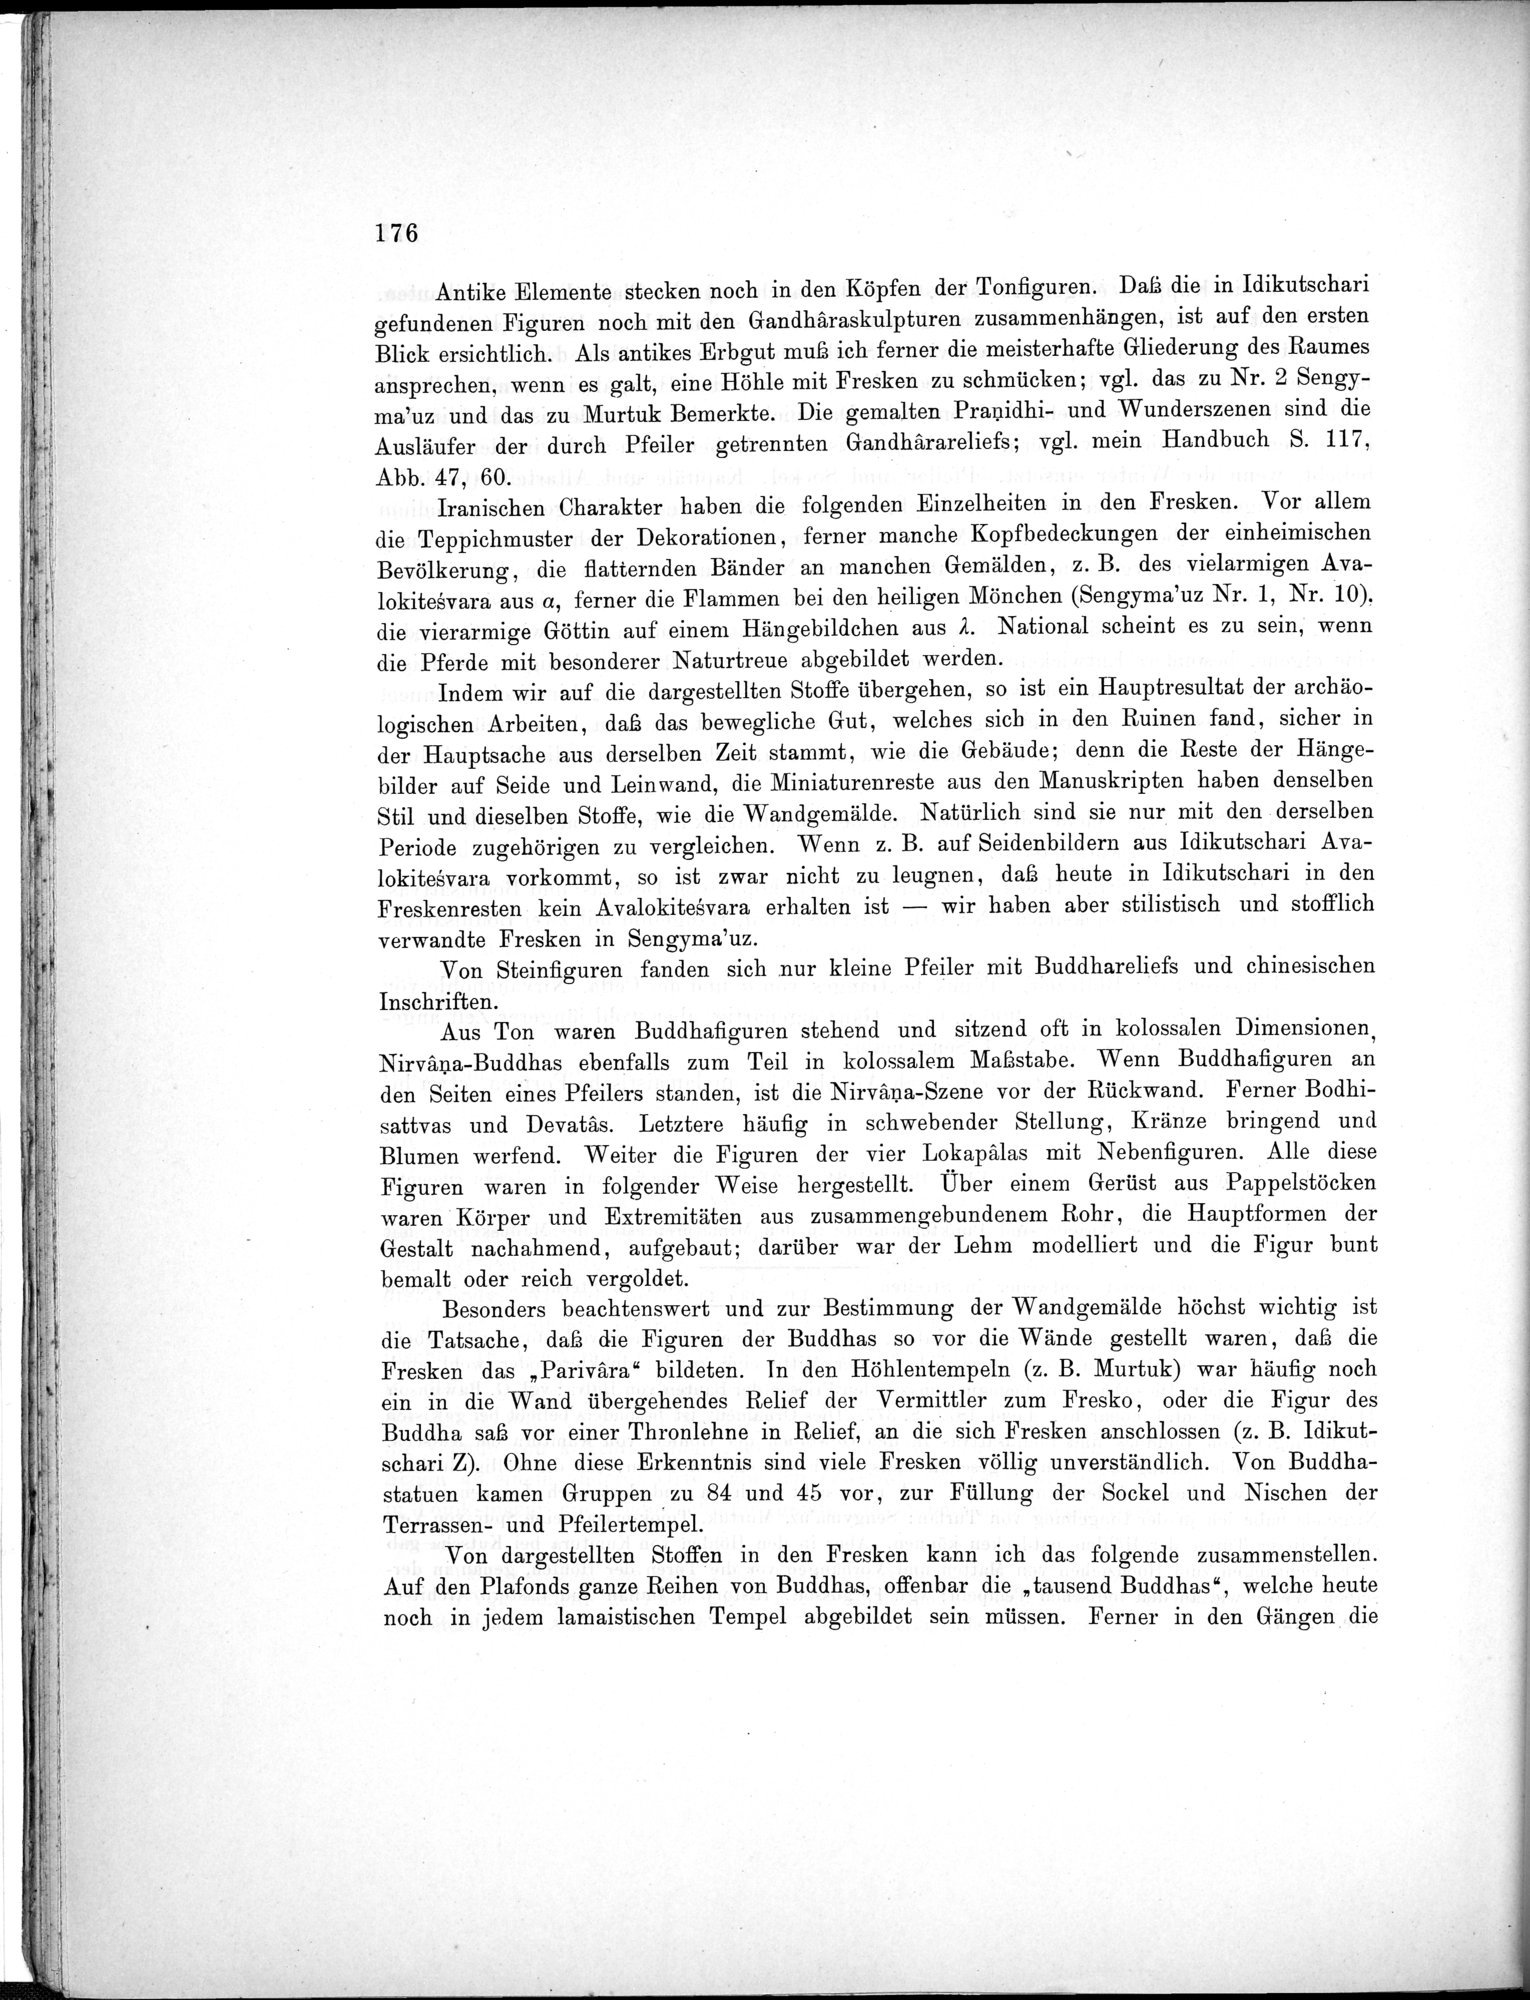 Bericht über archäologische Arbeiten in Idikutschari und Umgebung im Winter 1902-1903 : vol.1 / Page 186 (Grayscale High Resolution Image)